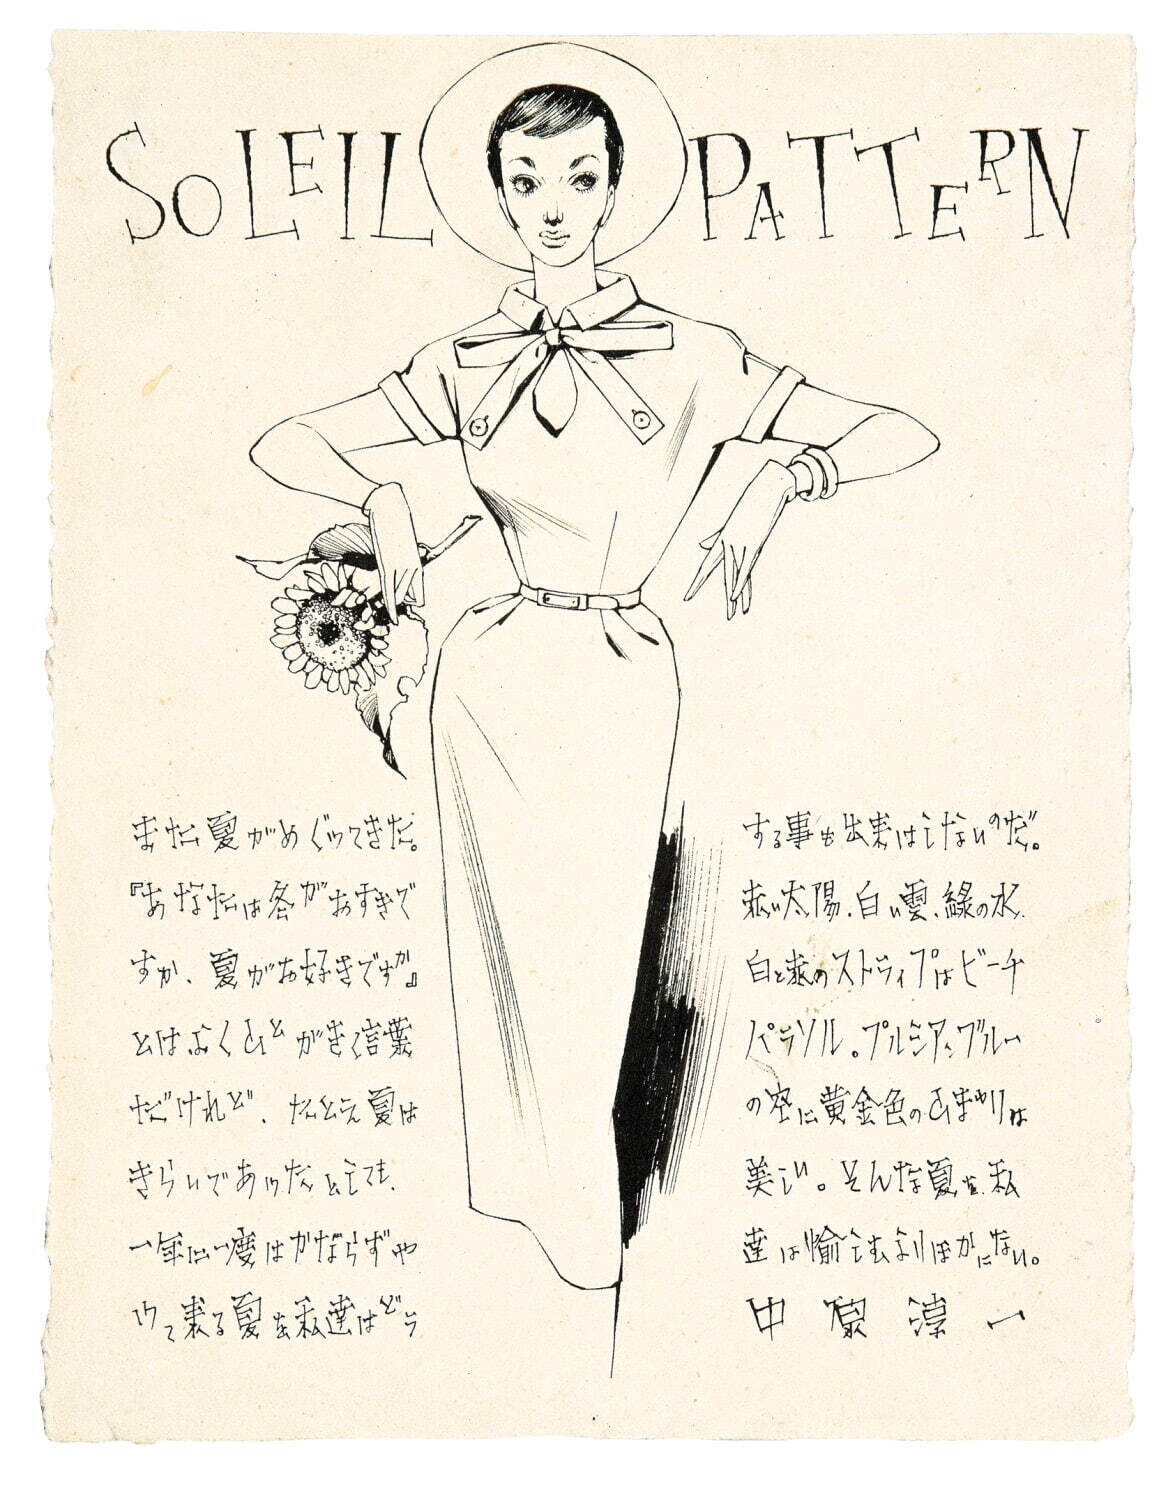 中原淳一 《SOLEIL PATTERN》 (『それいゆ』第25号 口絵原画) 1953年
© JUNICHI NAKAHARA/HIMAWARIYA